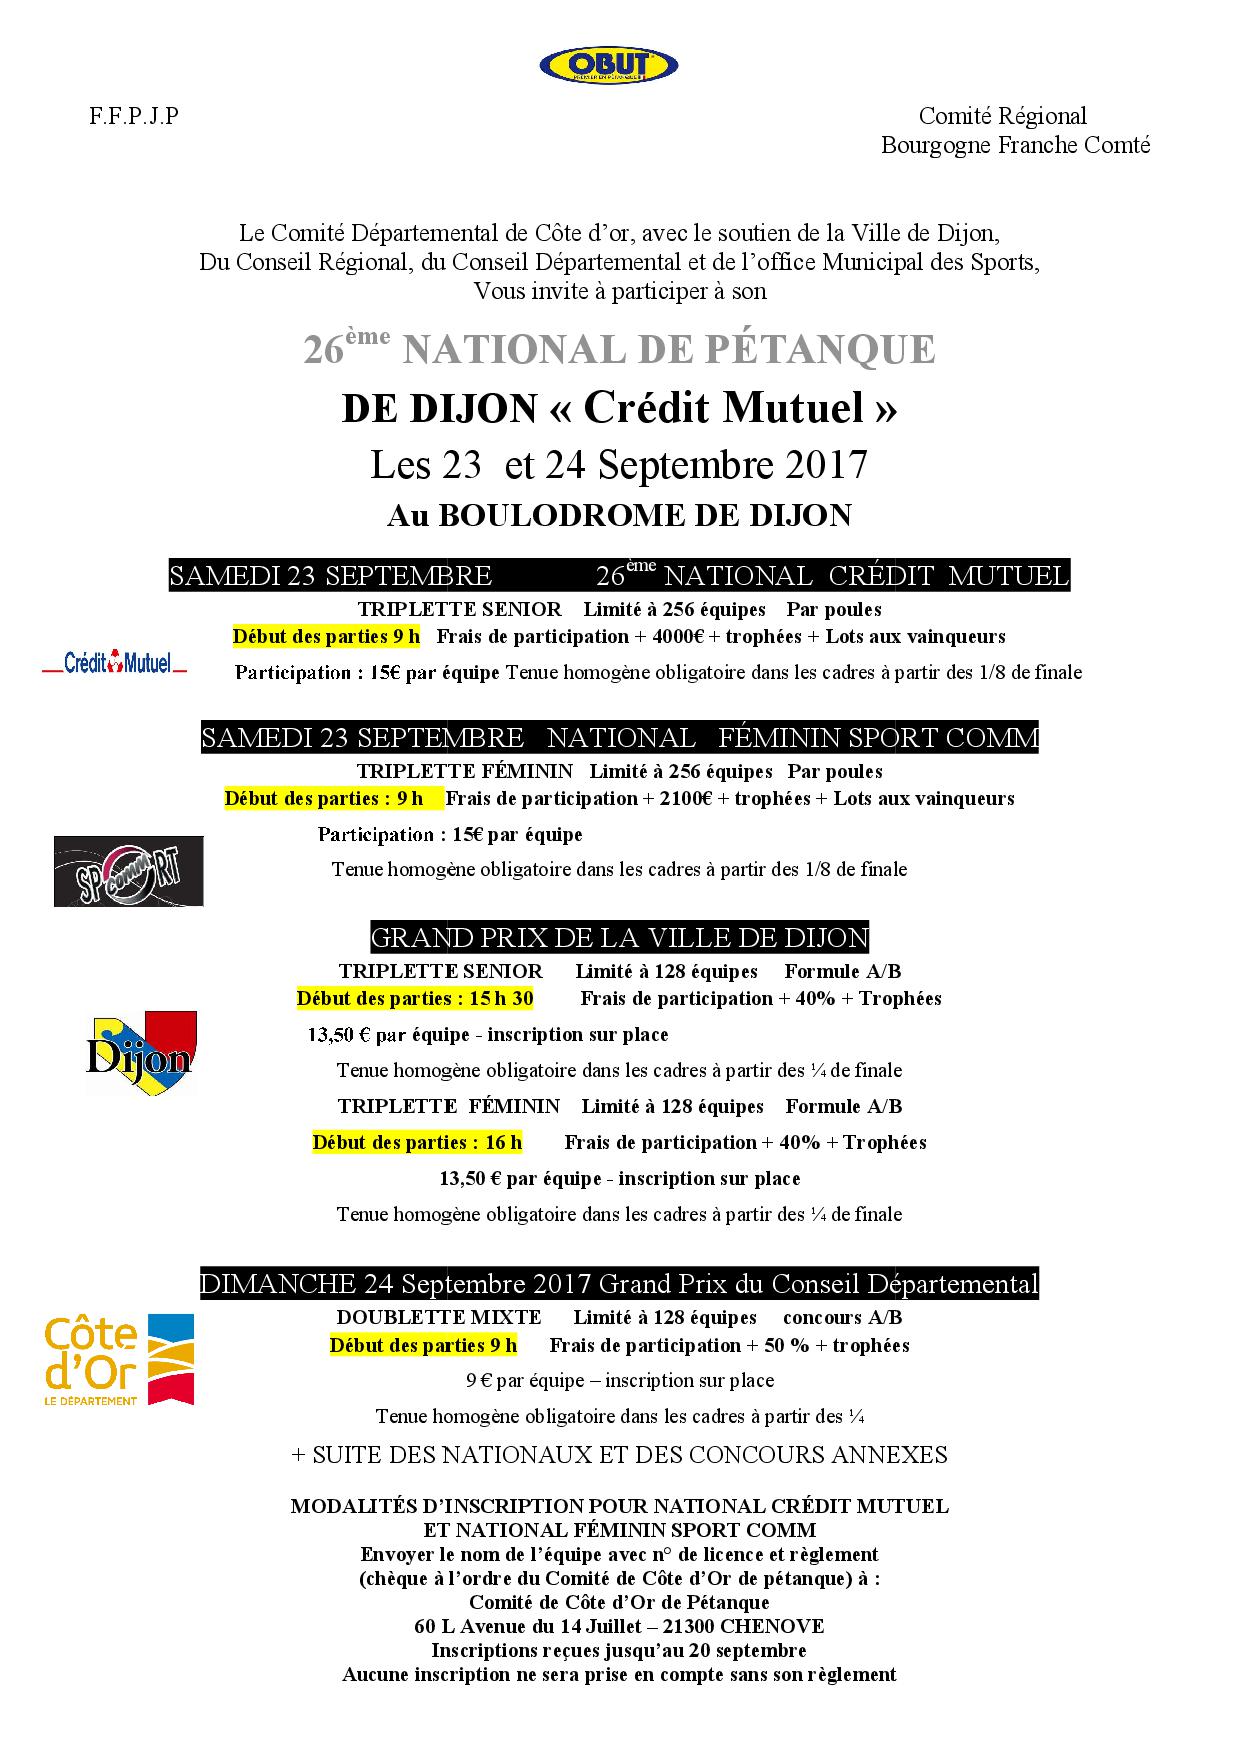 National de Dijon Triplette Senior + National de Dijon Triplette Féminin des 23 et 24 septembre 2017.